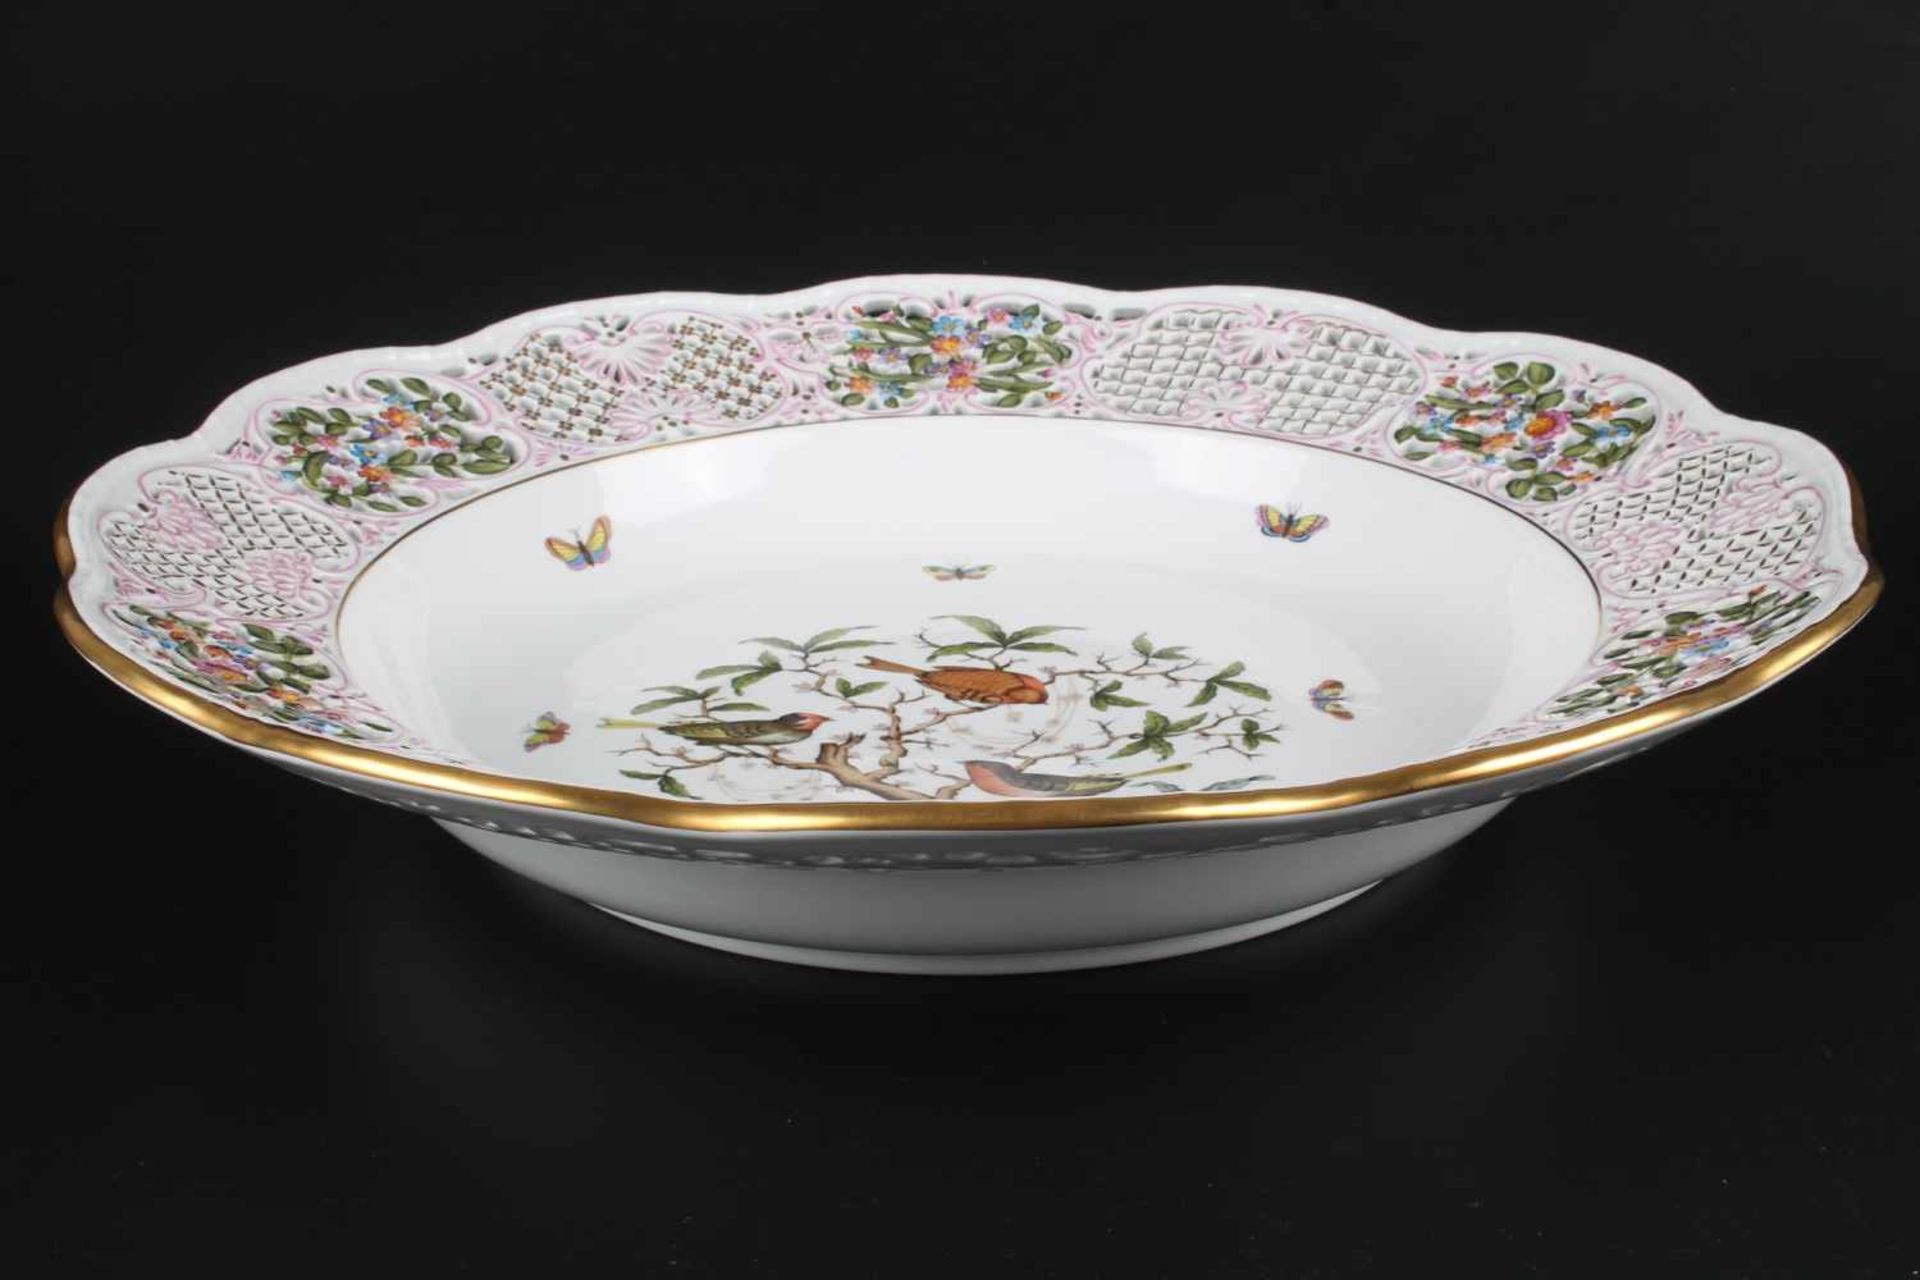 Riesige Prunkschale - Herend Rothschild #8400, bowl,Porzellan, Ungarn 20. Jahrhundert, Dekor - Bild 4 aus 6